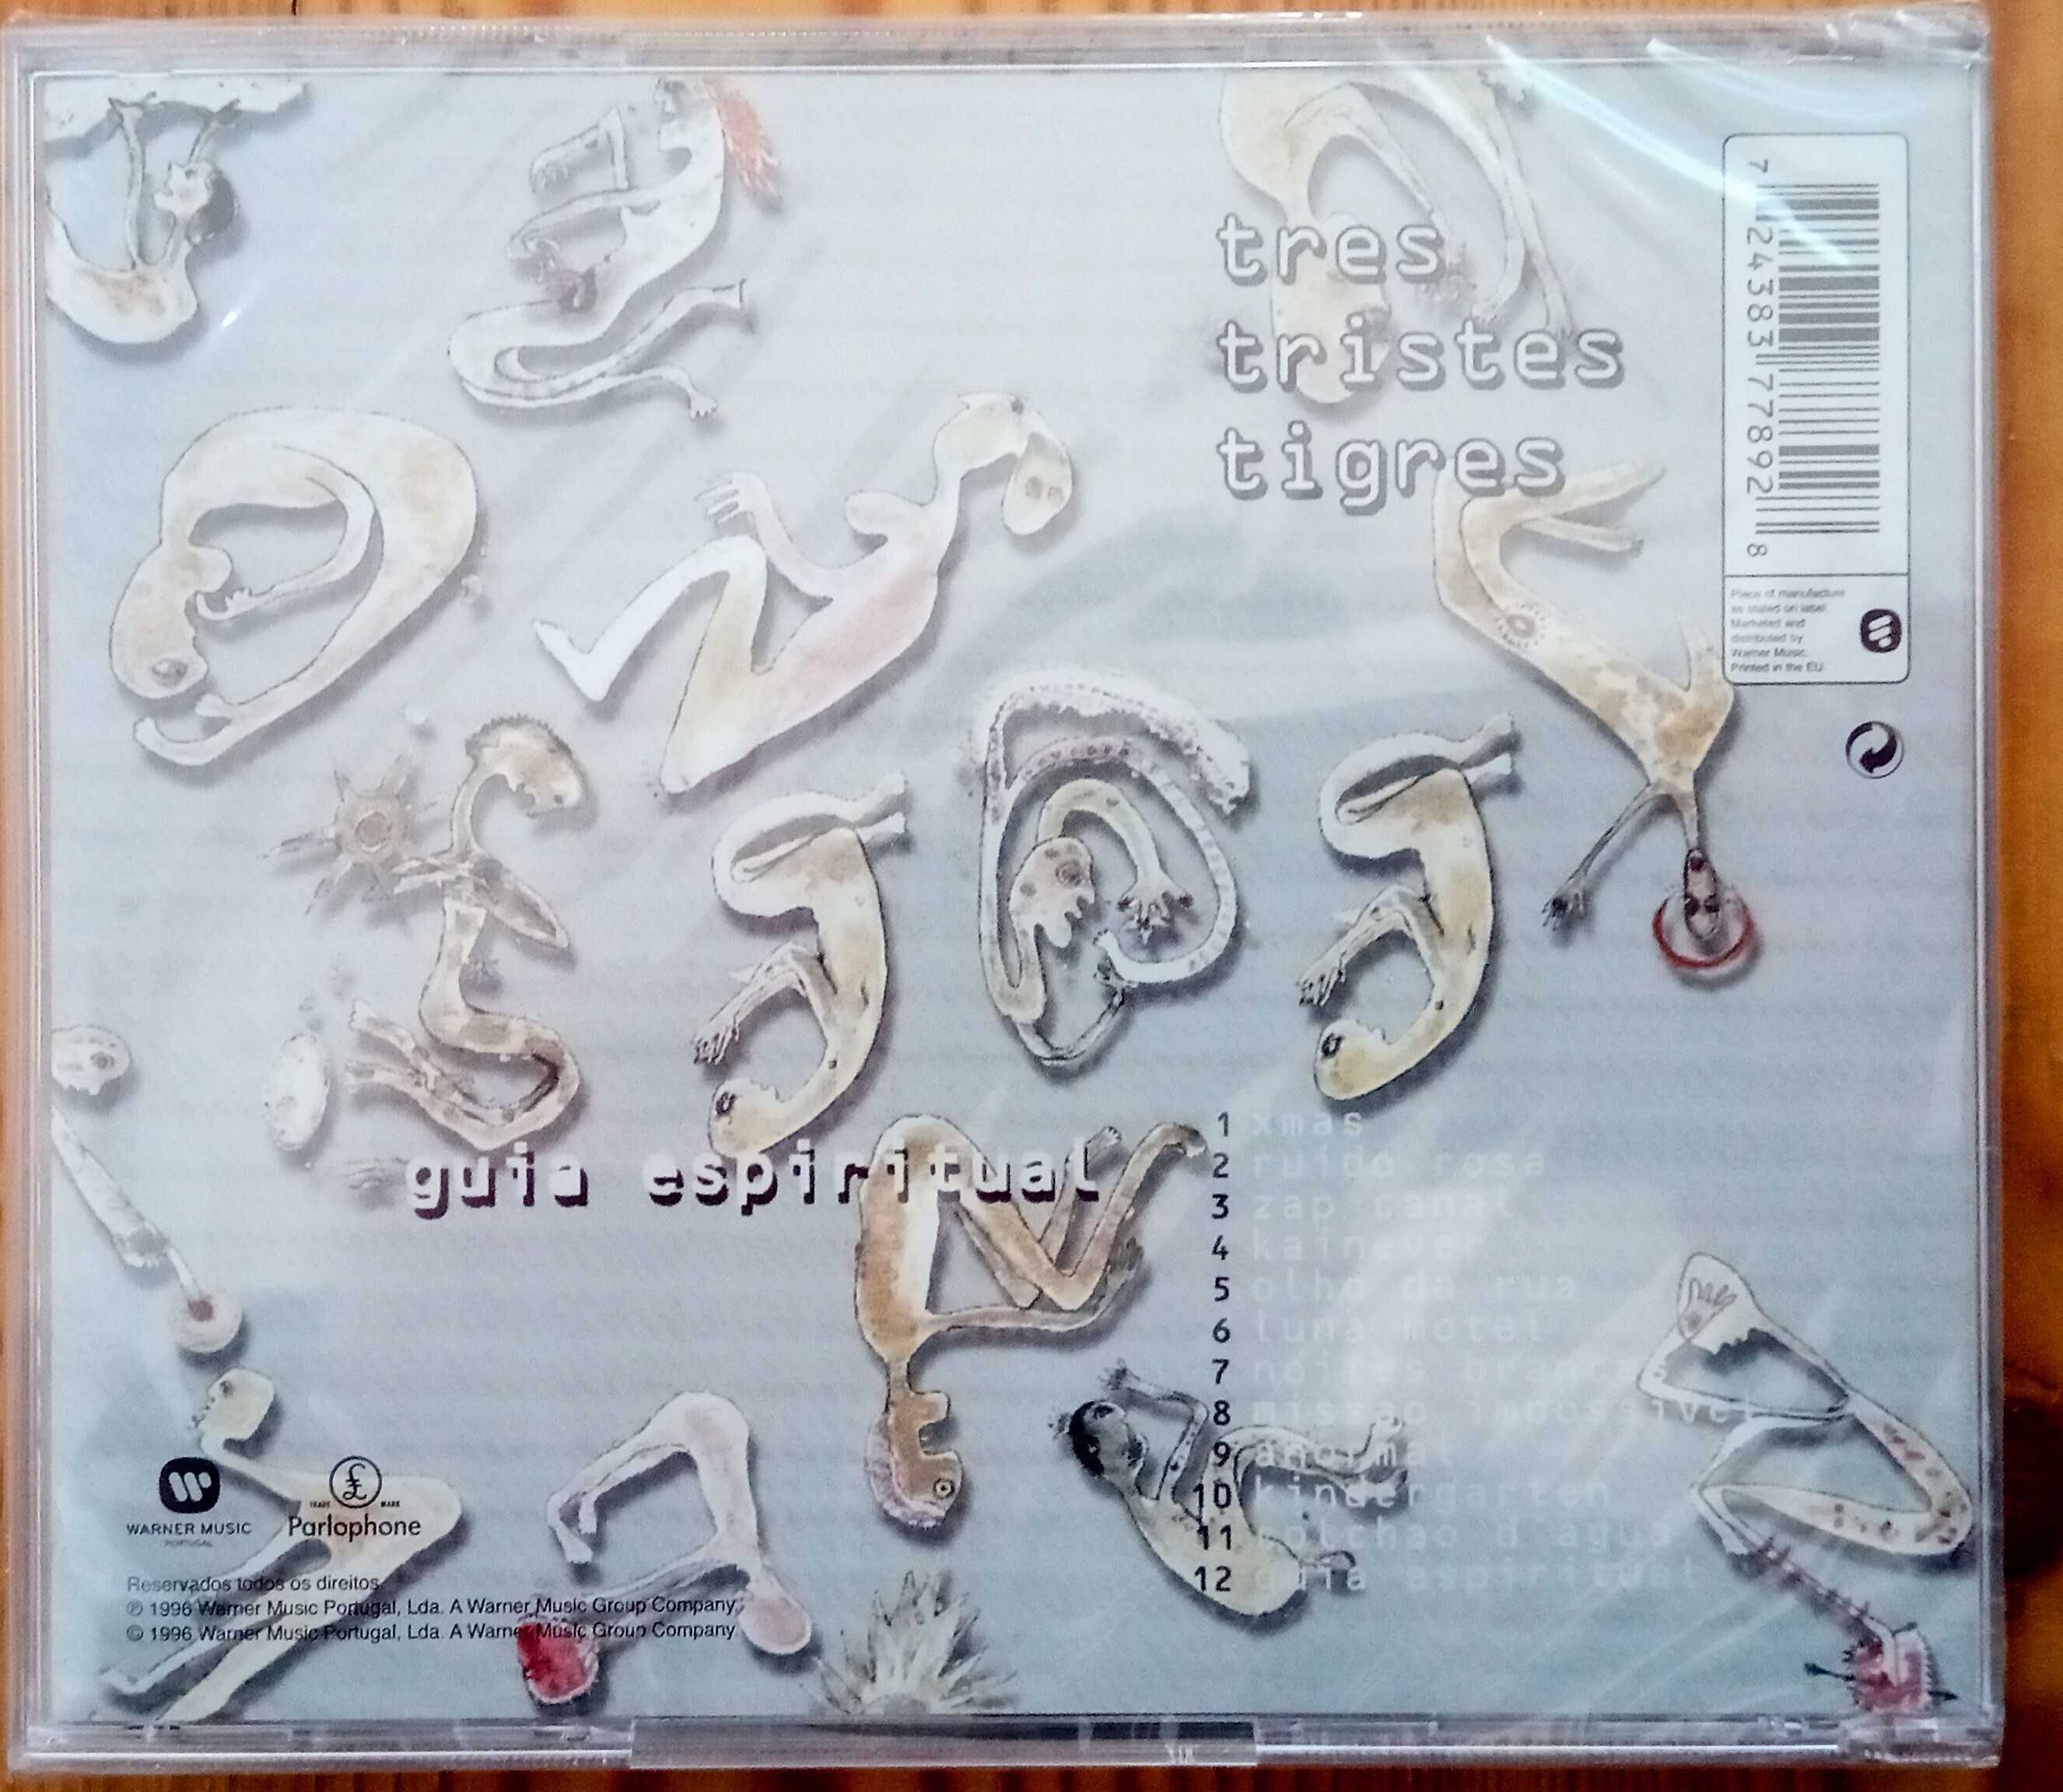 CDs: 3 Tristes Tigres, Rita Redshoes, Amália, Chainho